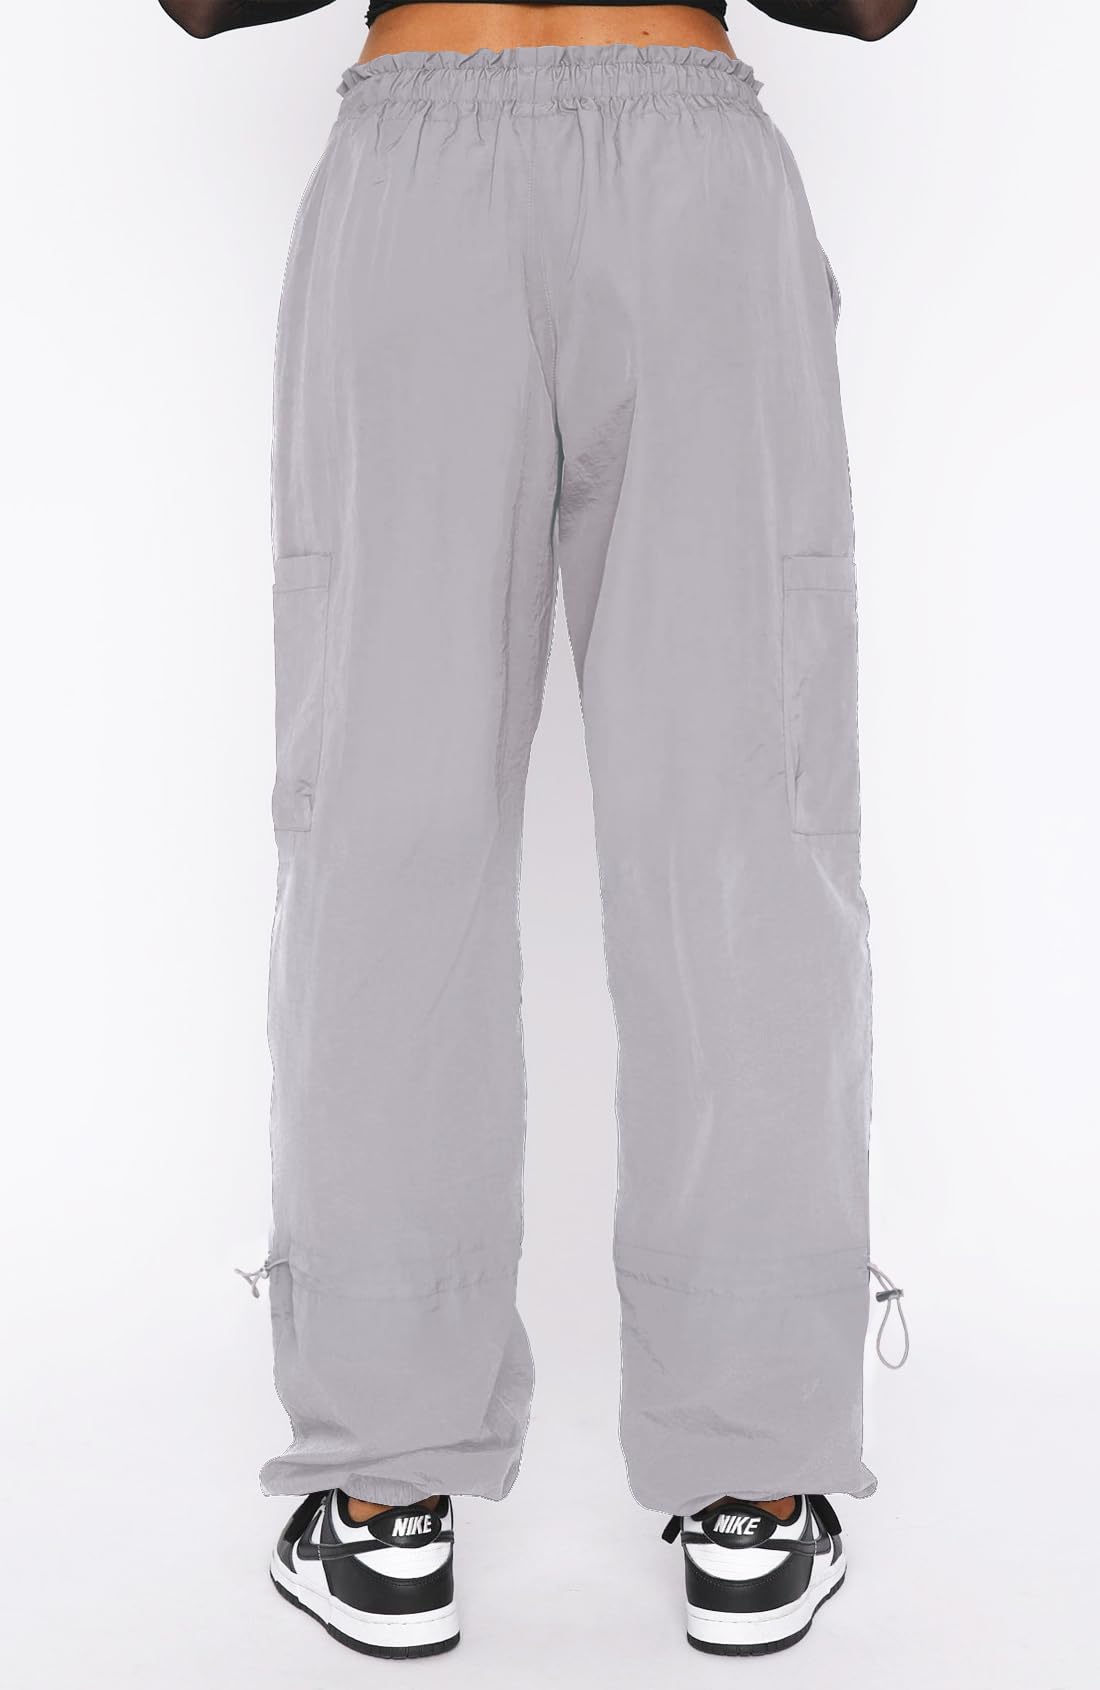 DISCIPBUSH Cargo Pants Women Baggy - Parachute Pants for